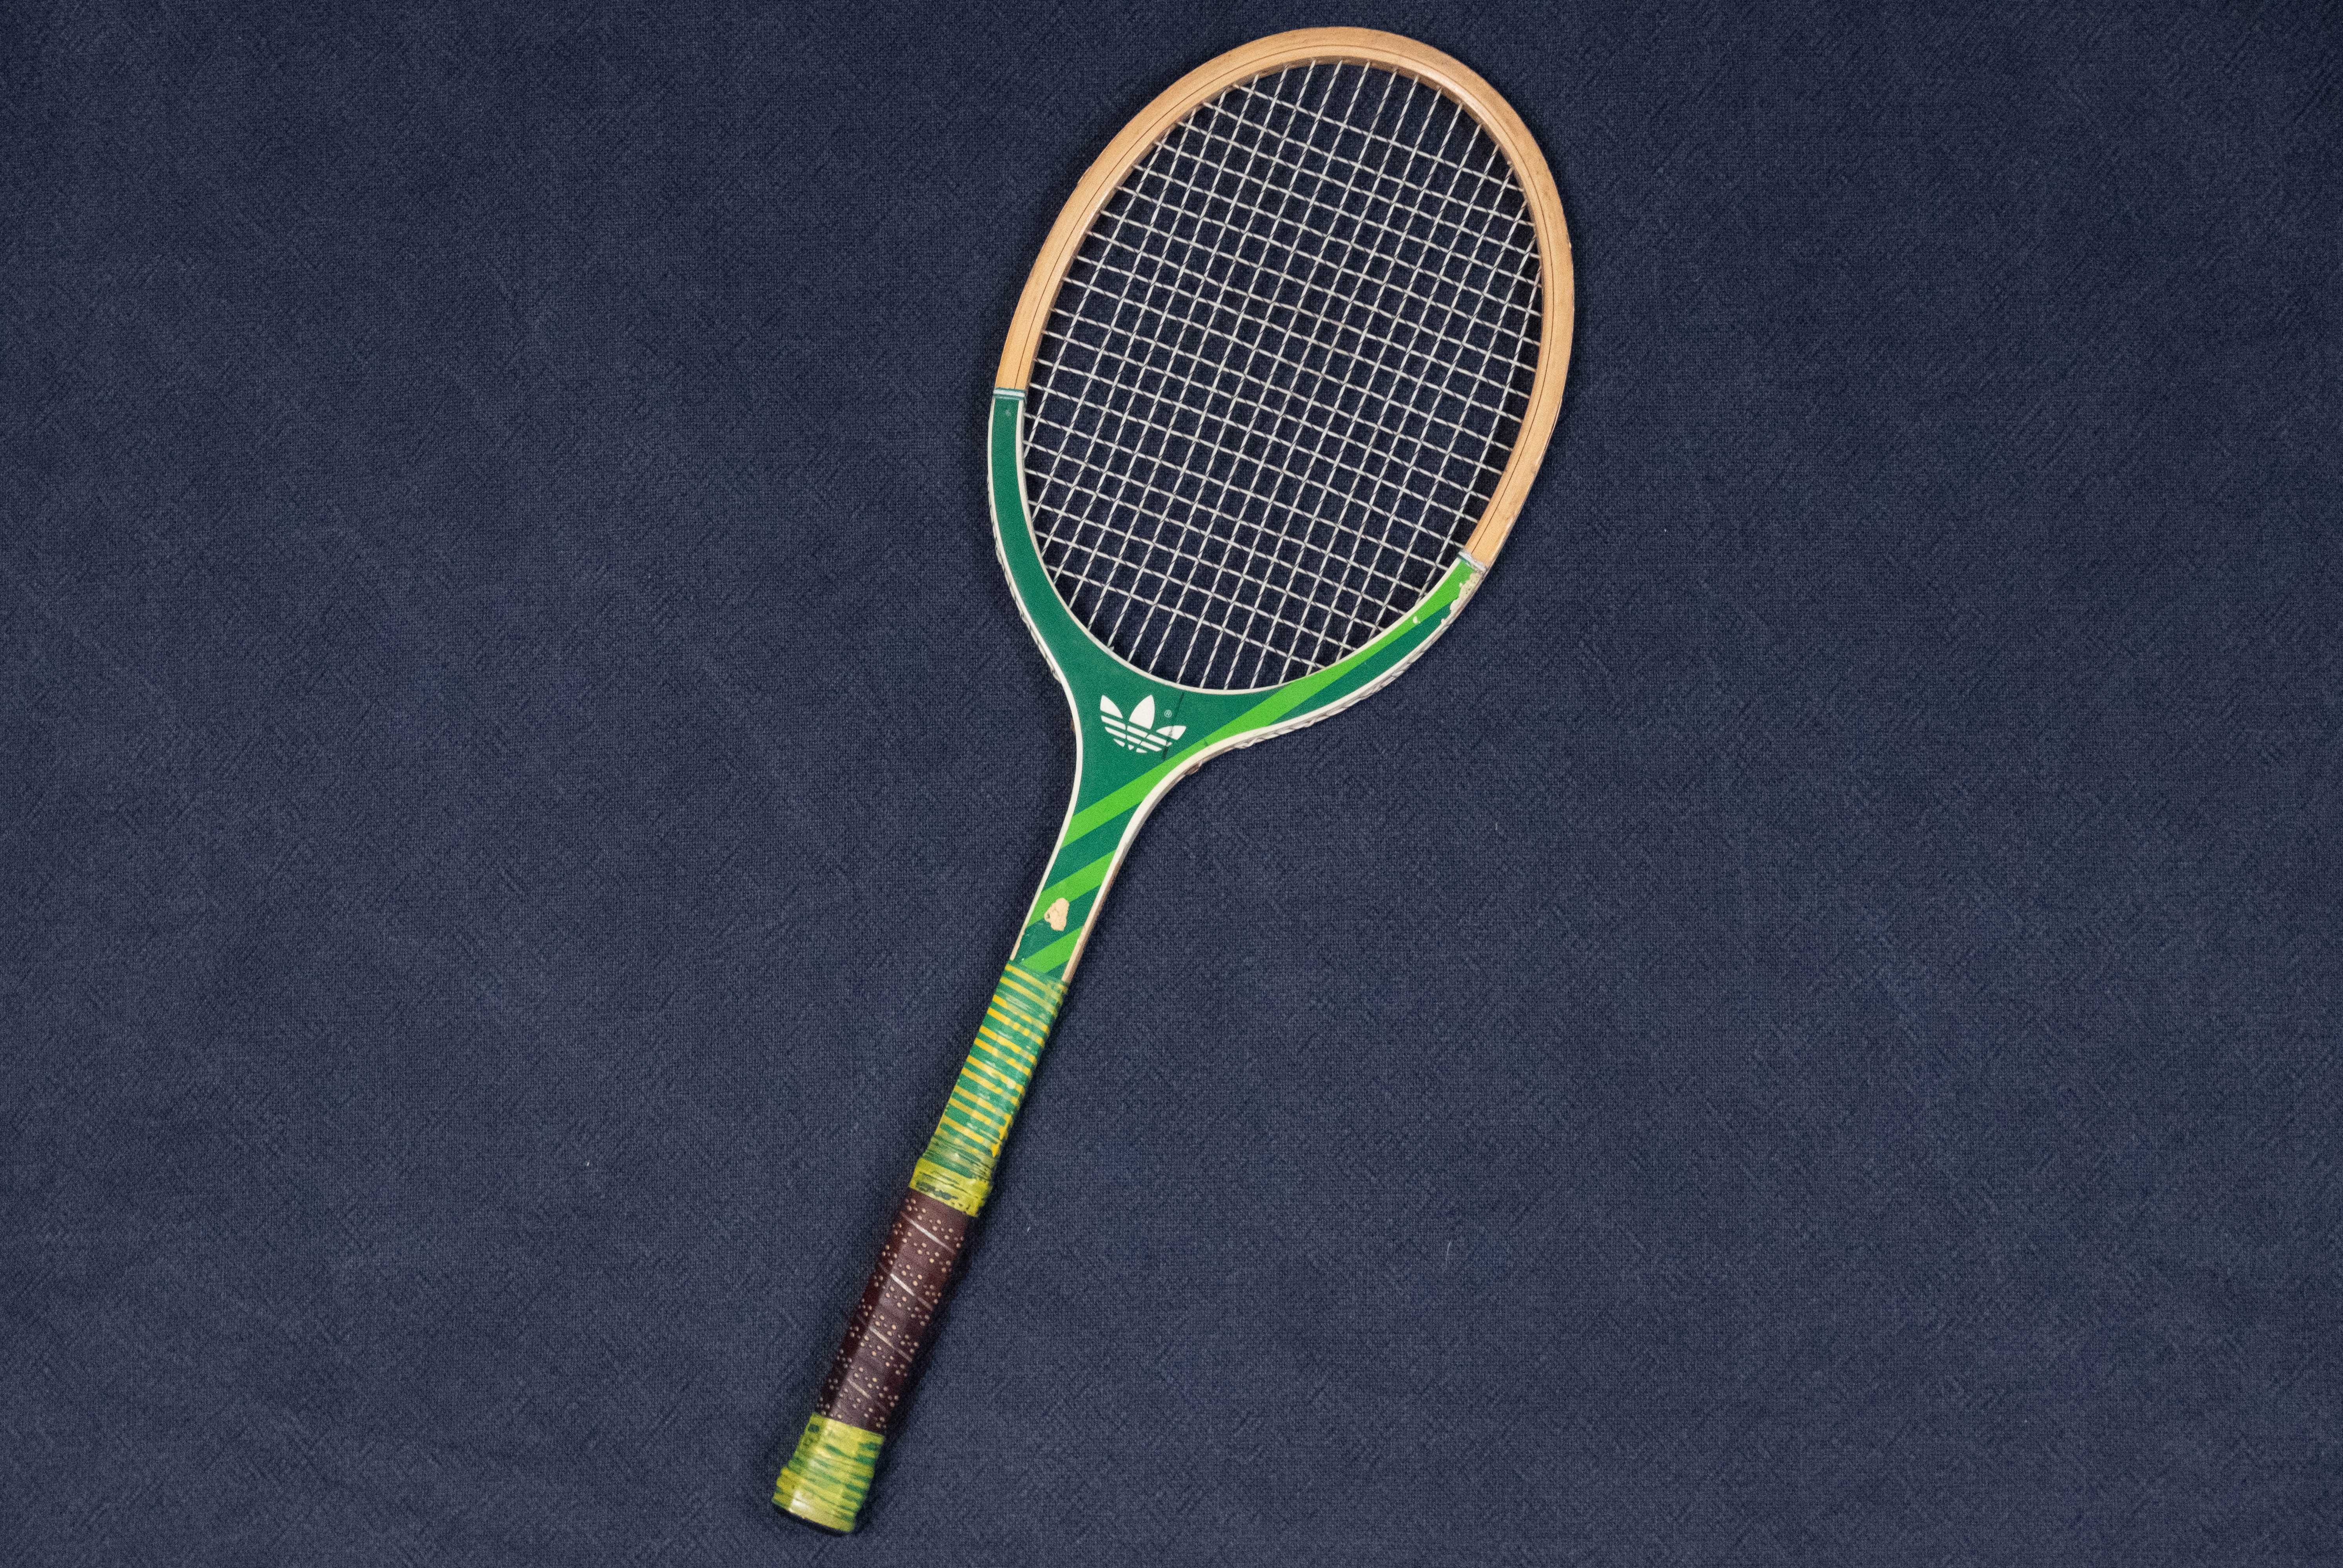 rakieta tenisowa vintage retro Adidas Originals zielona